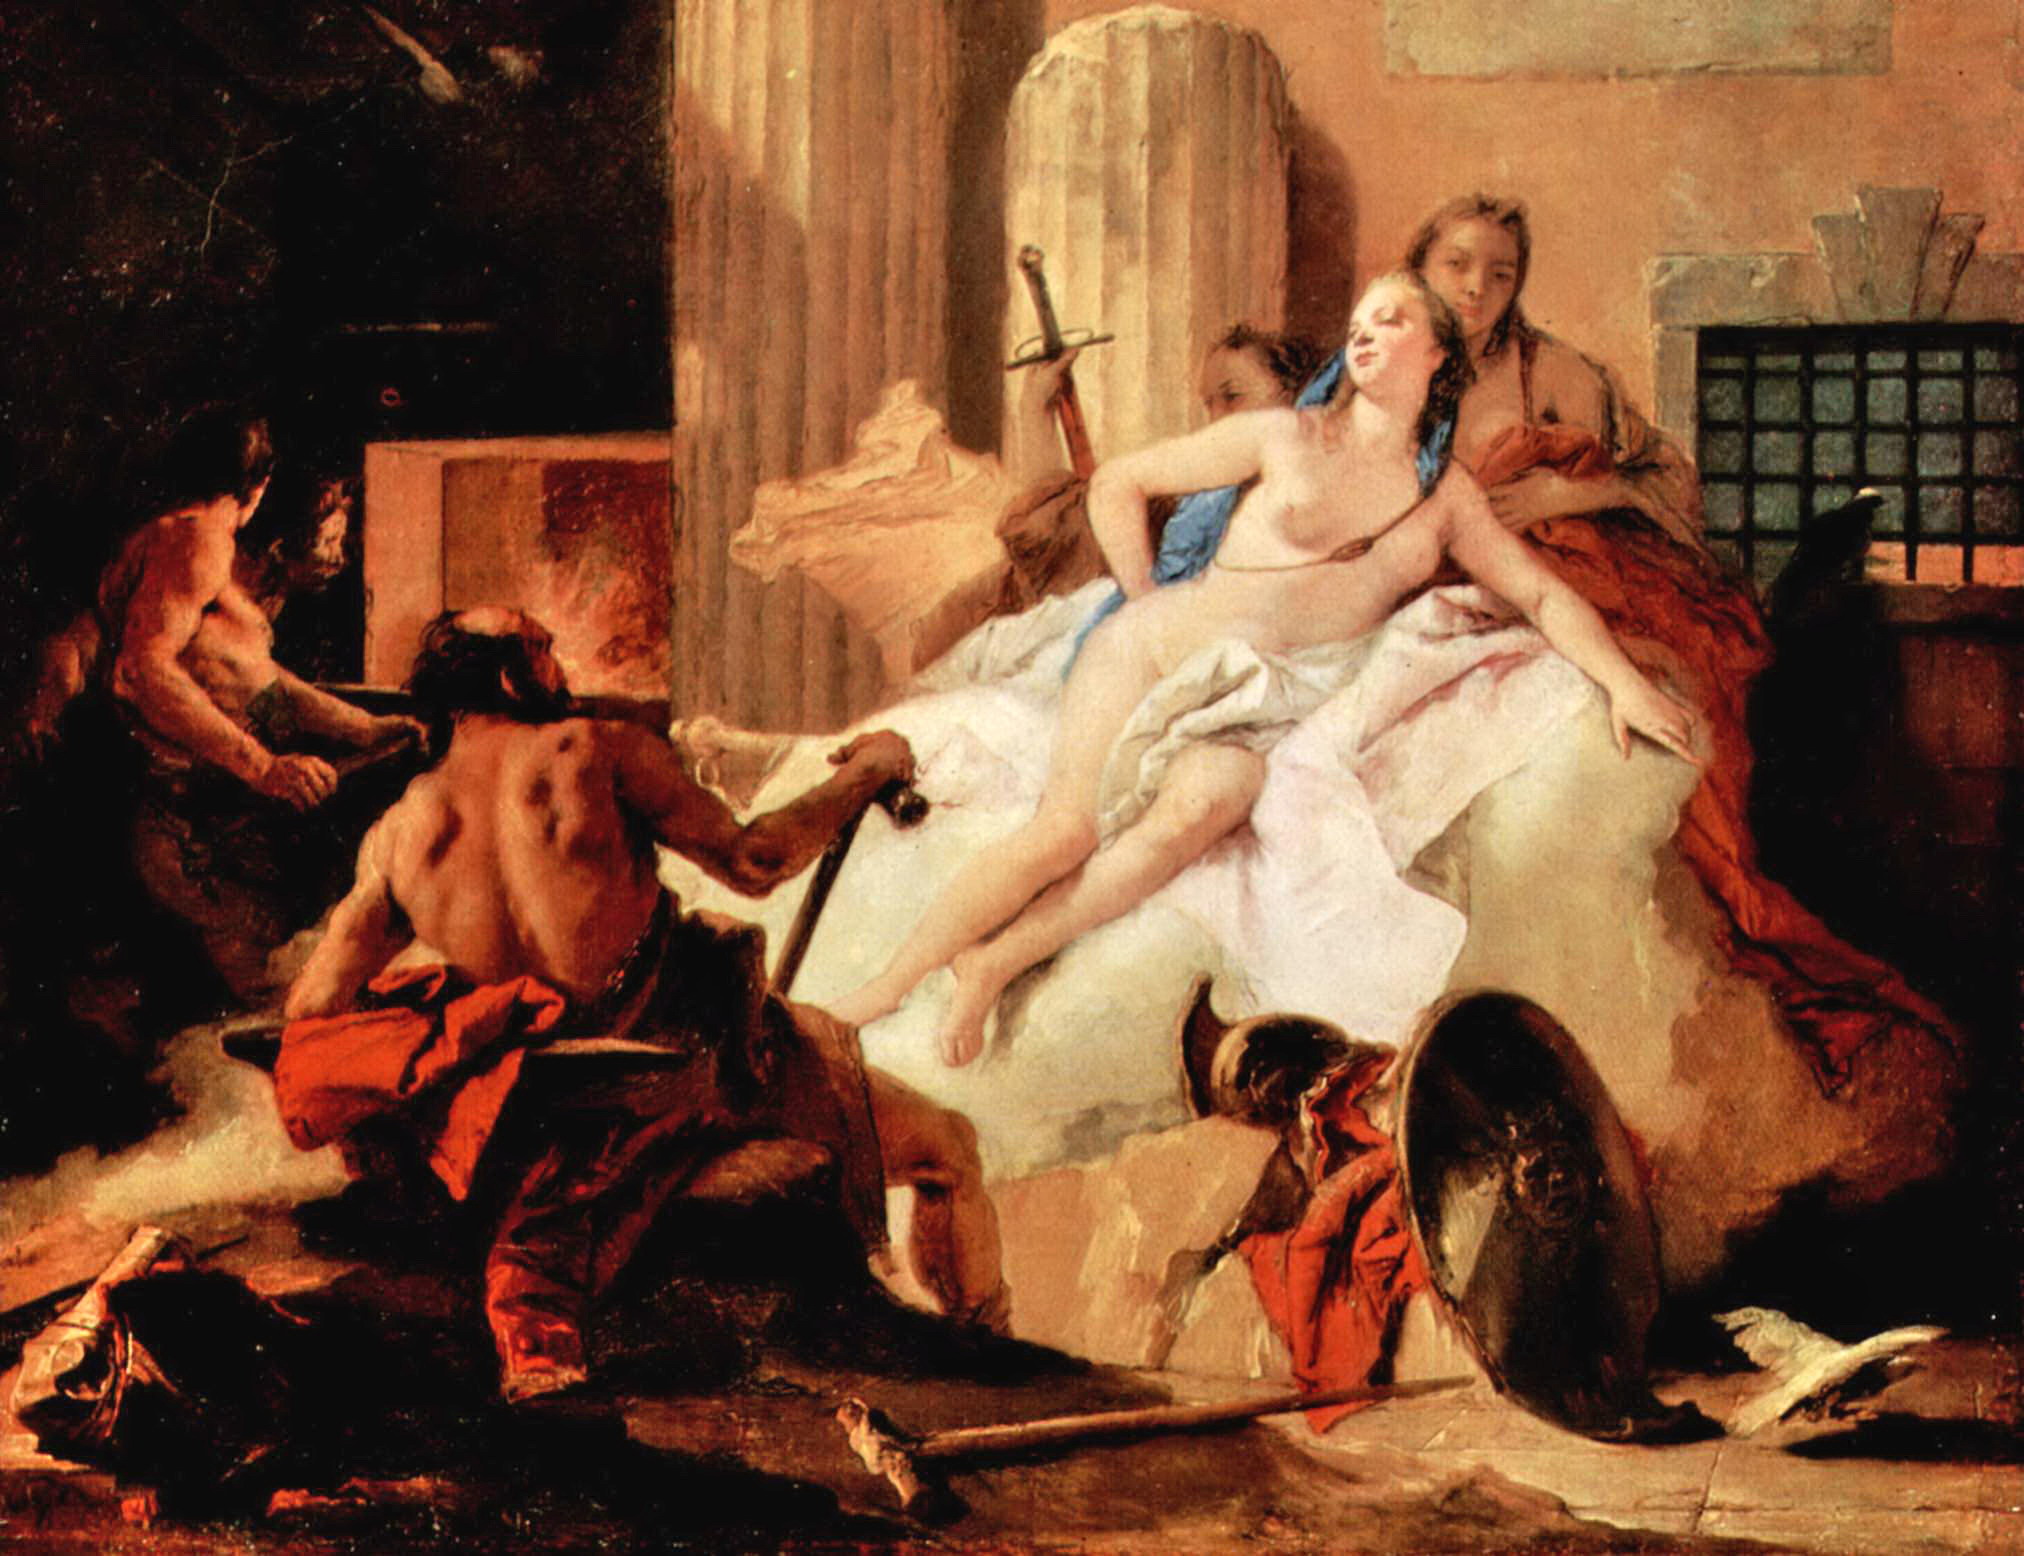 Venus and Vulcan - Giovanni Battista Tiepolo - 1758-60